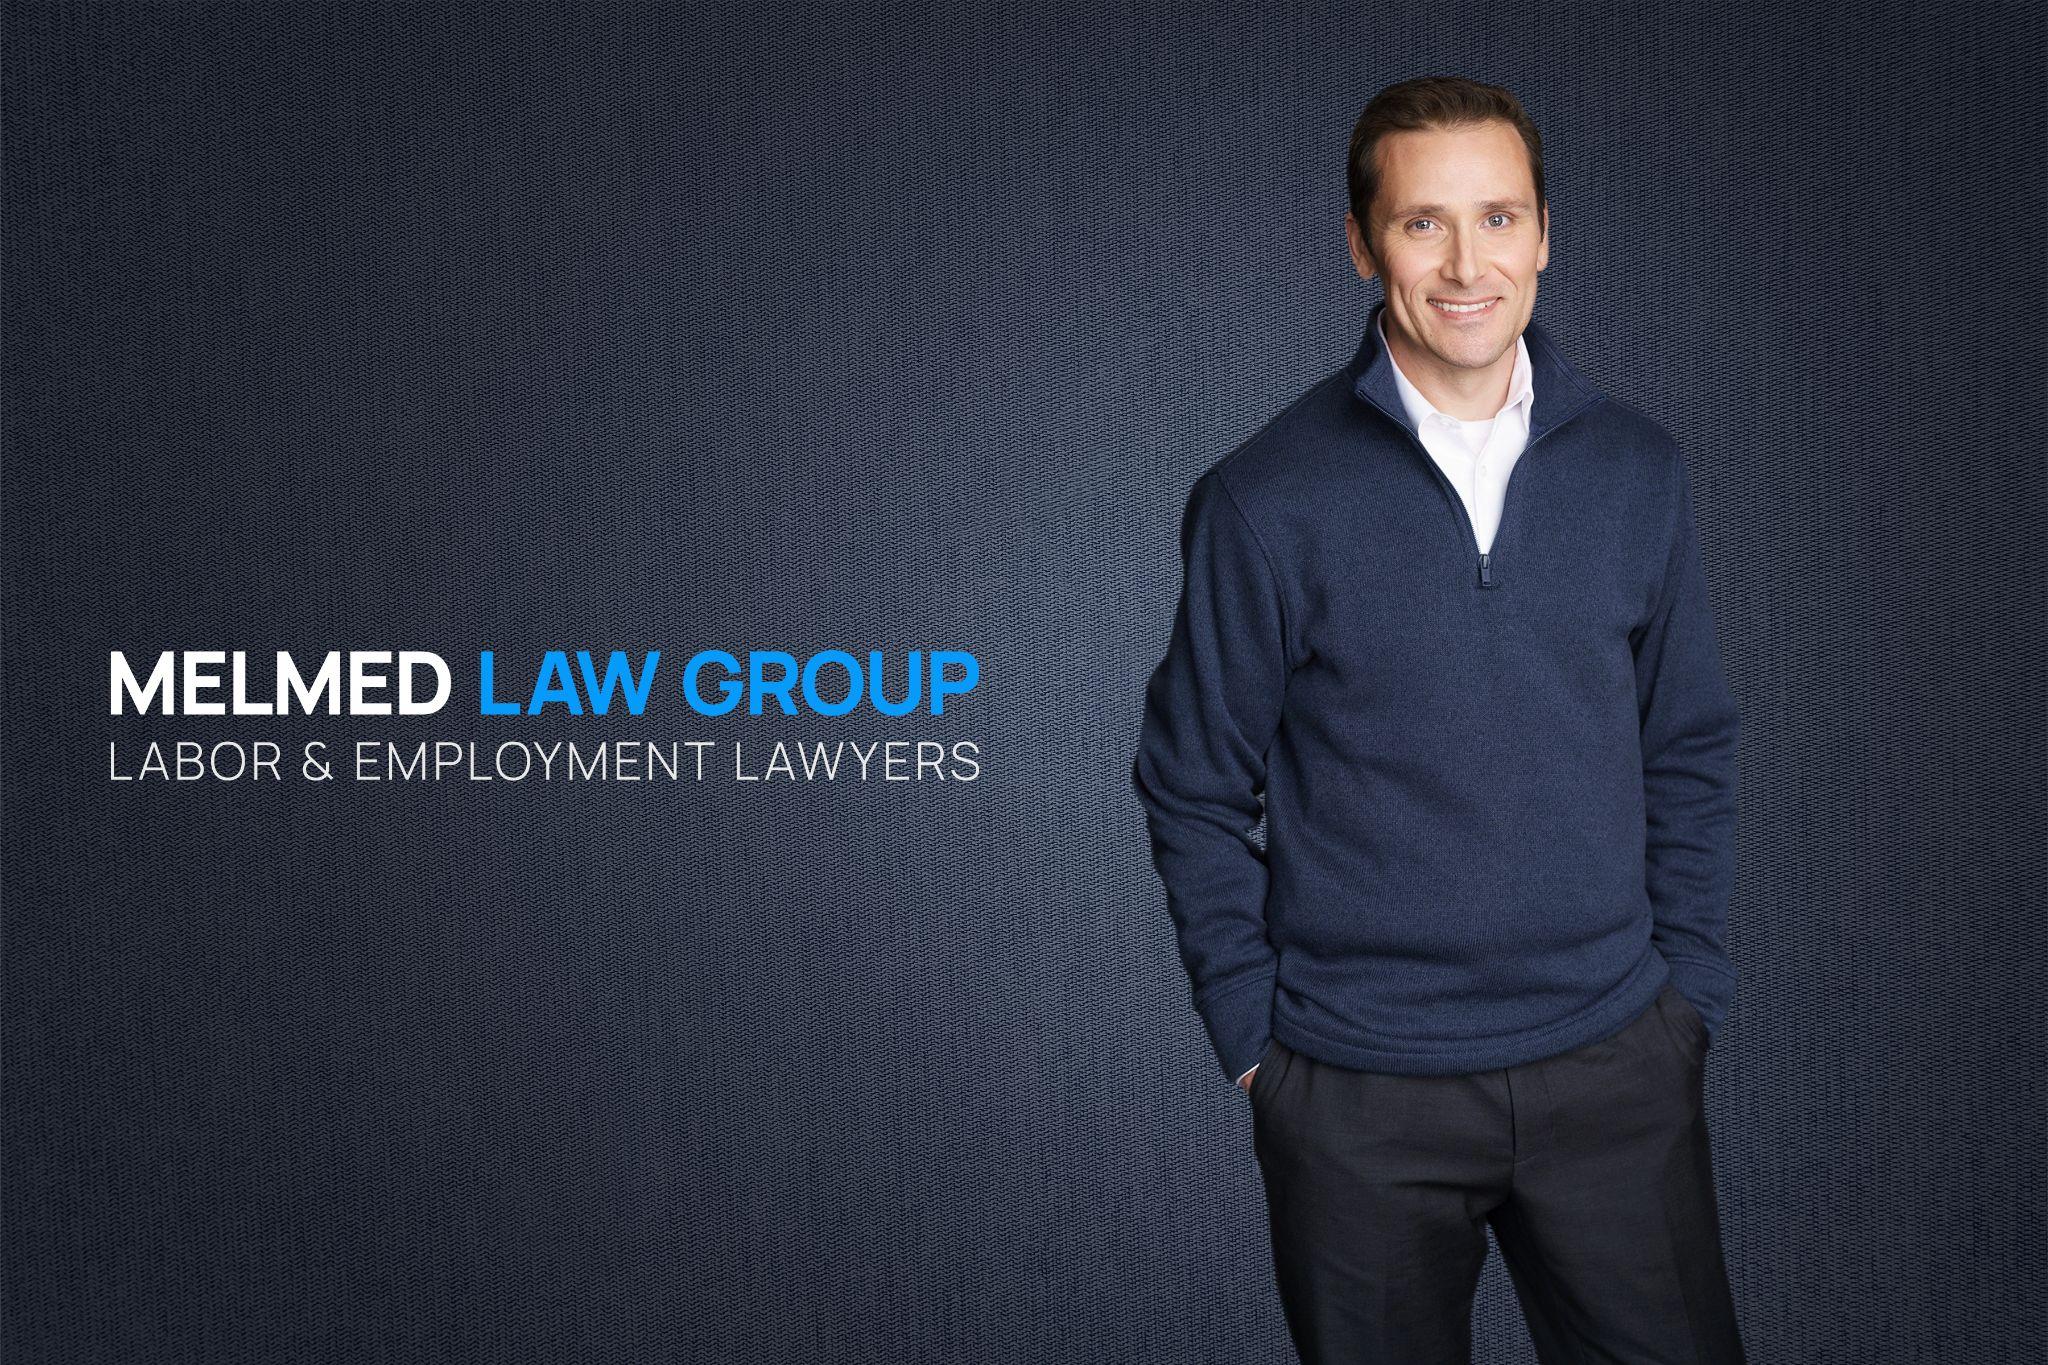 Melmed Law Group